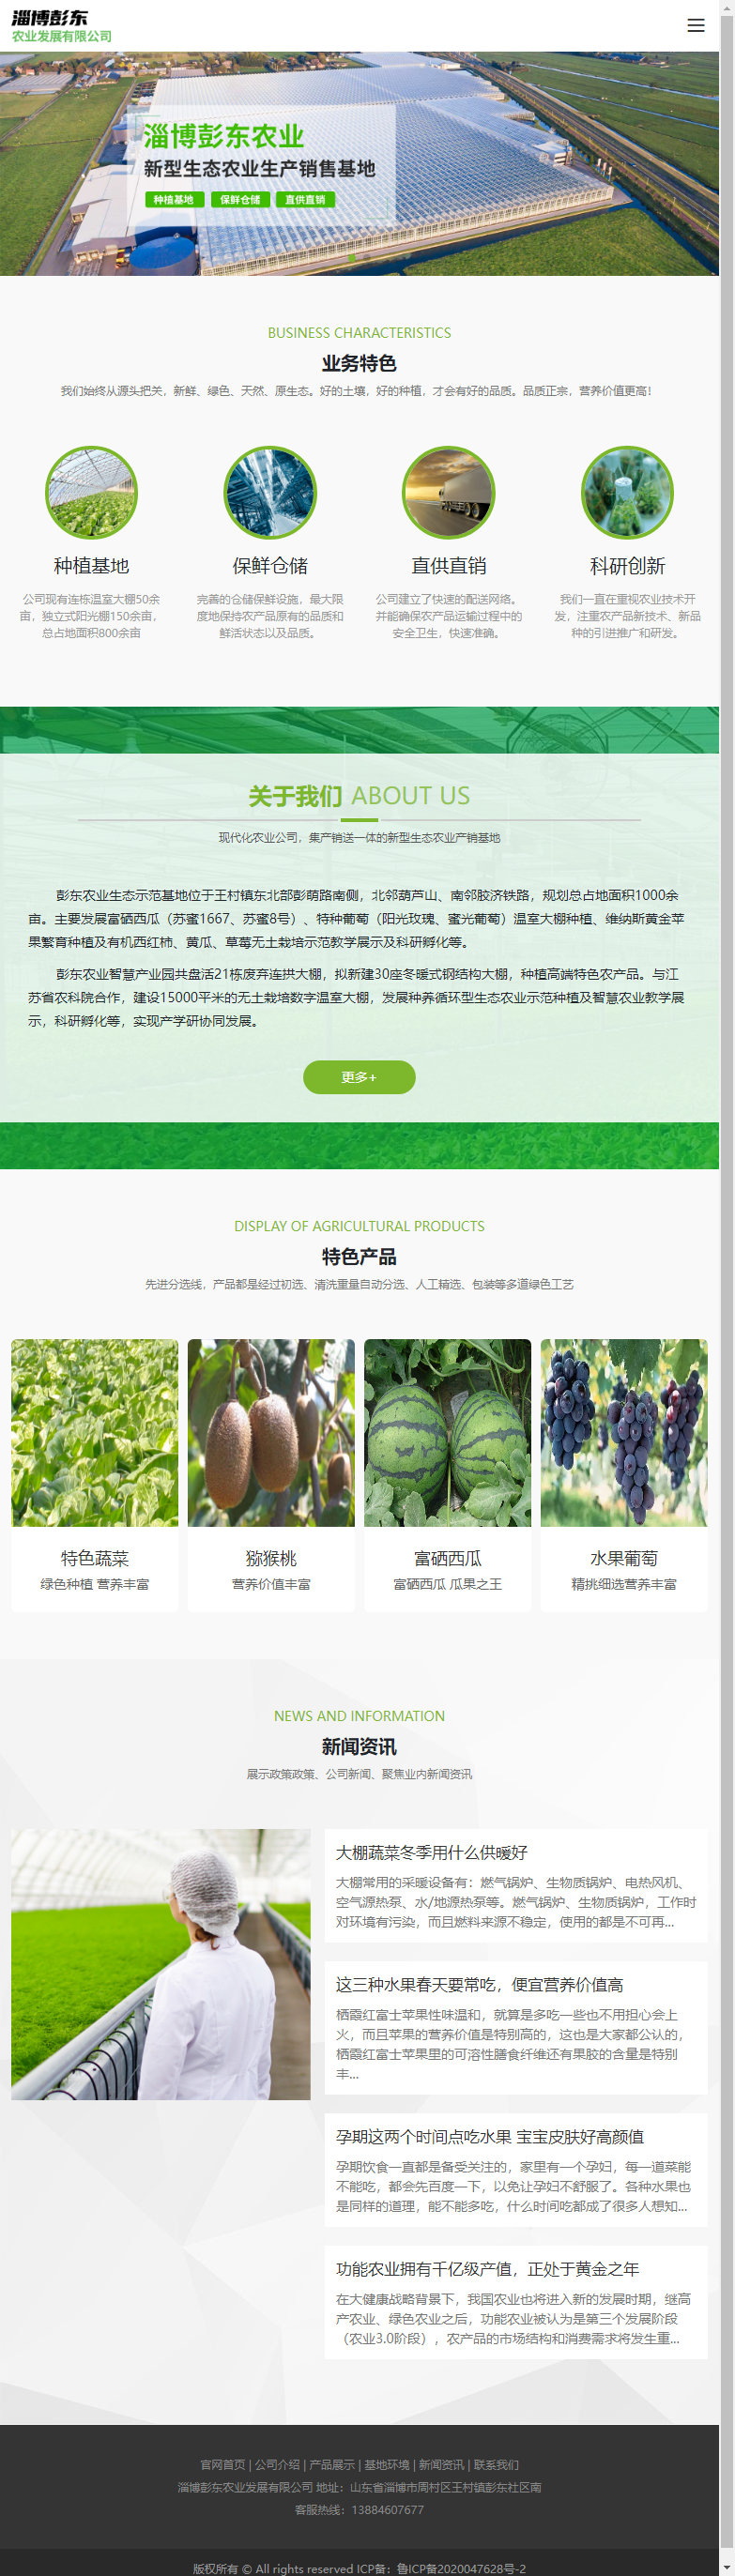 淄博彭东农业发展有限公司网站案例